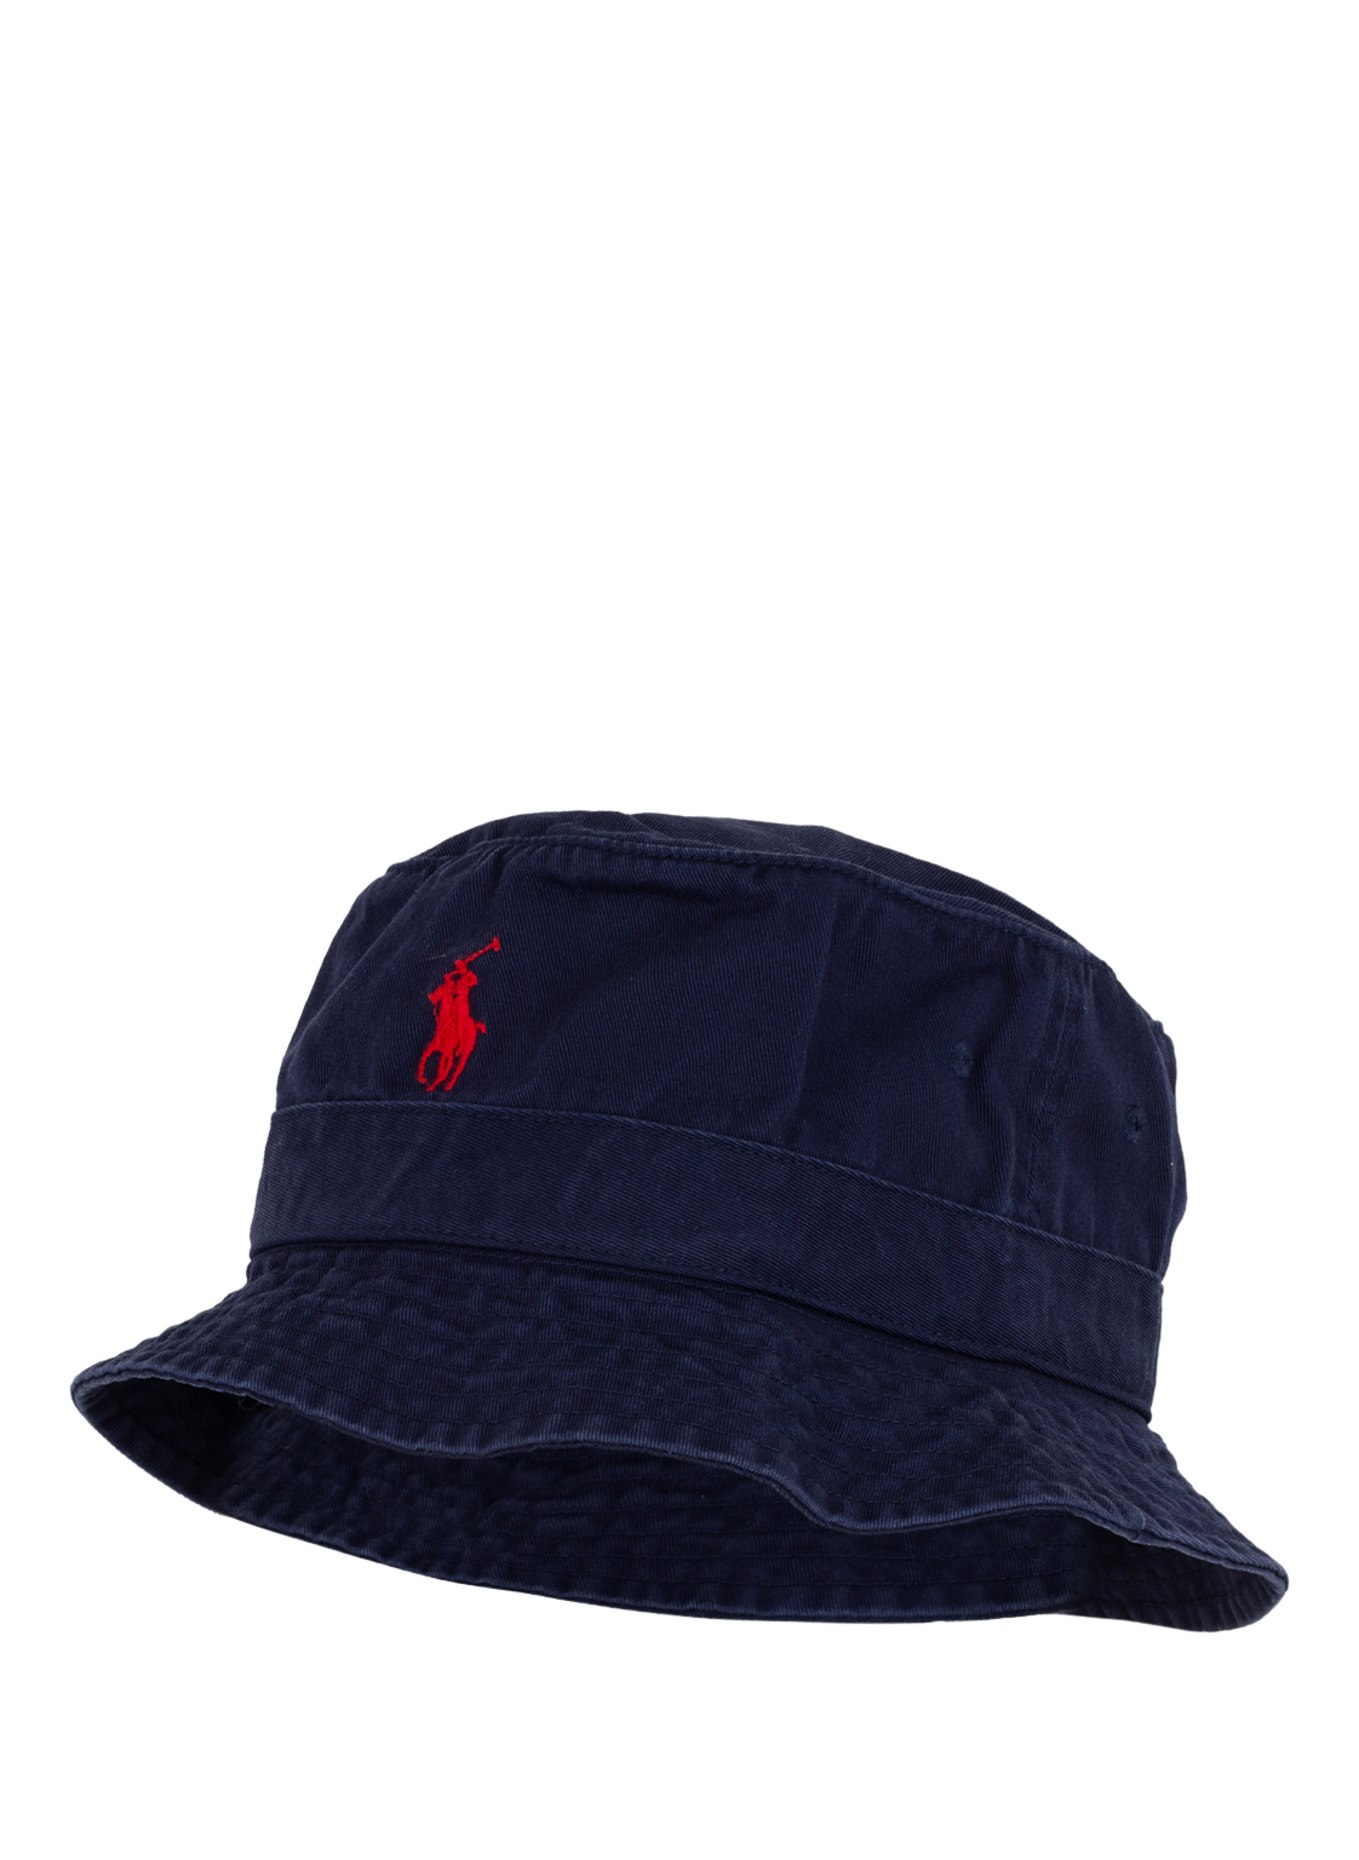 POLO RALPH LAUREN Bucket hat, Color: DARK BLUE (Image 1)